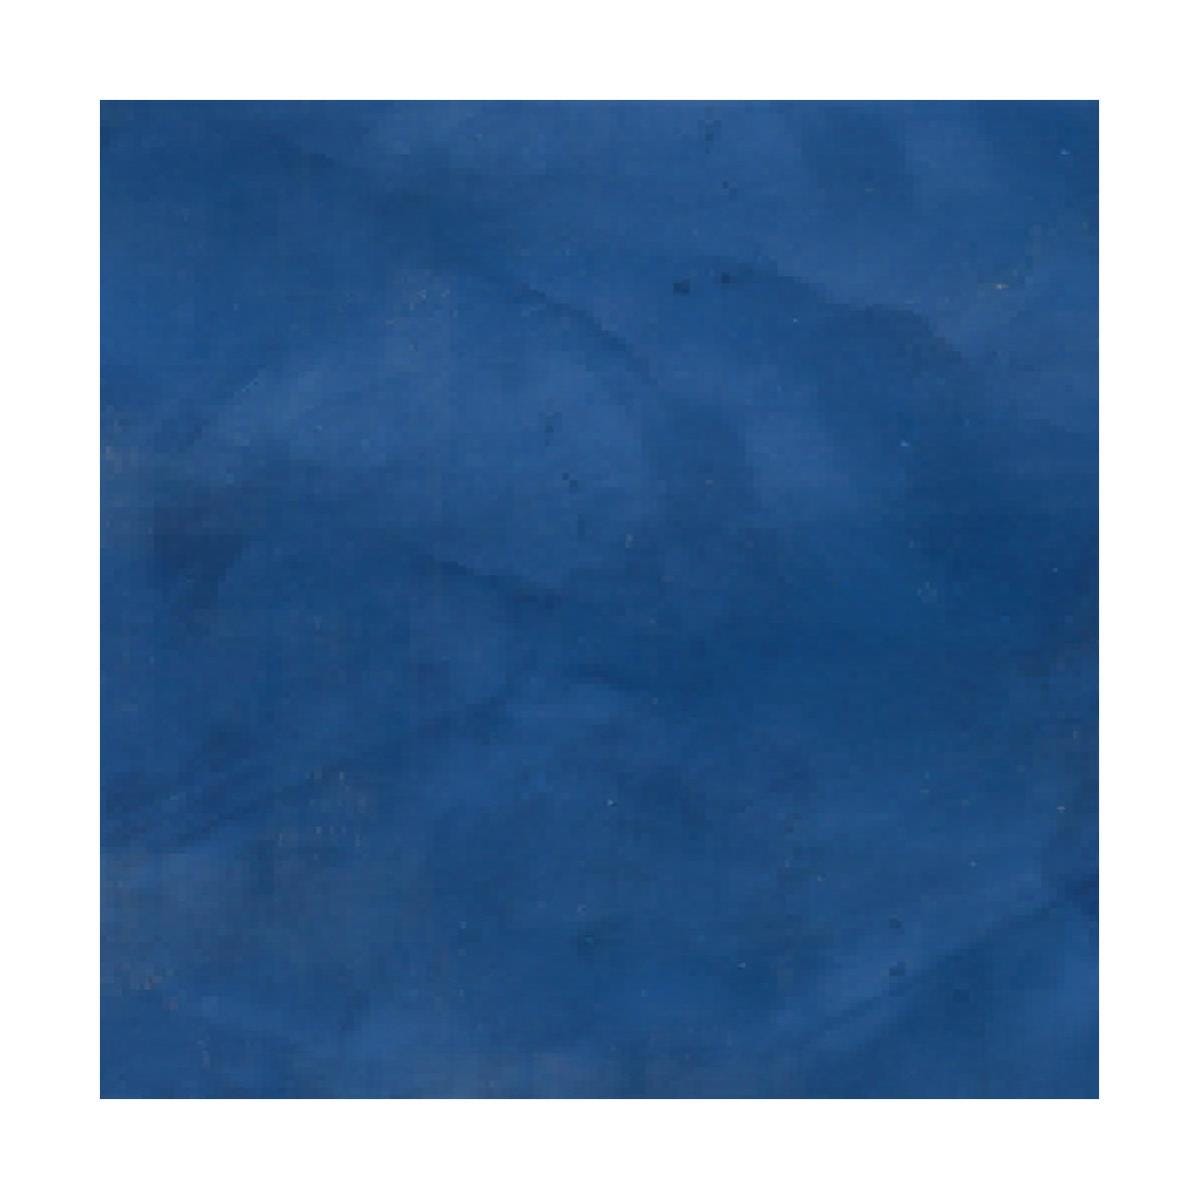 stuc venitien enduit stucco spatulable décoratif - KIT STUCCOLIS Bleu Capri - kit jusqu'à 7 m² - ARCANE INDUSTRIES 2